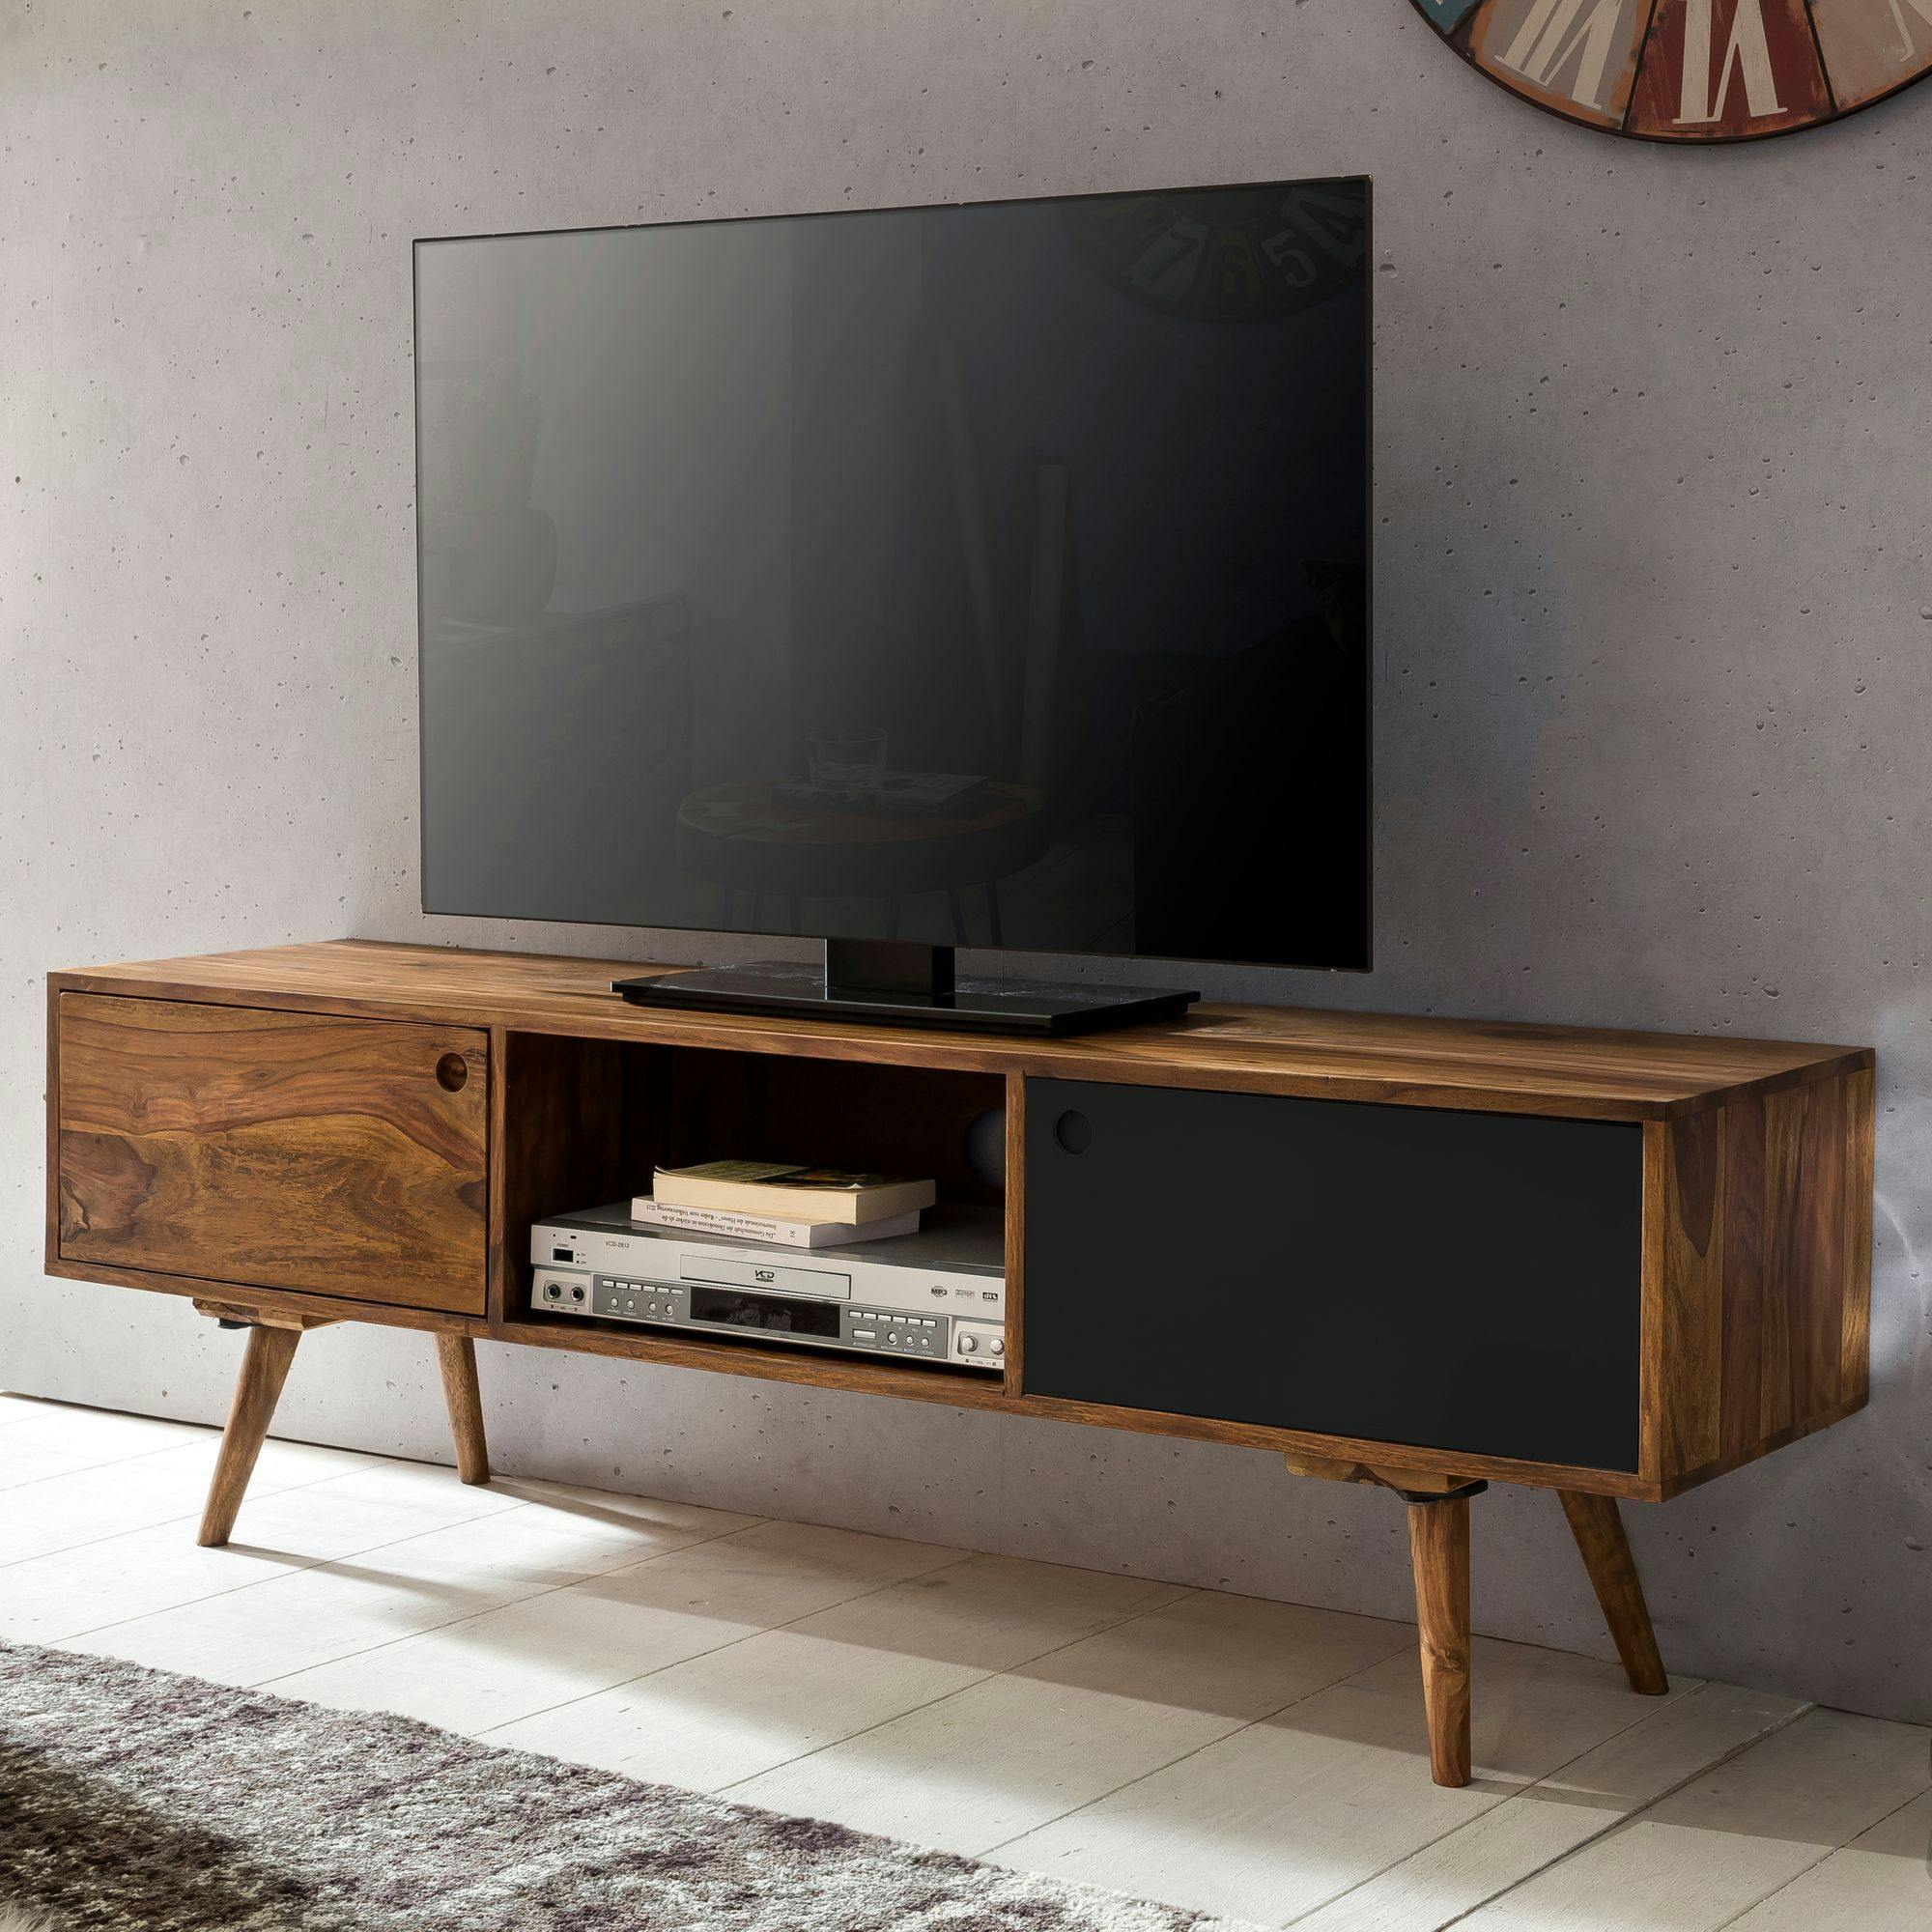 FineBuy Lowboard Massivholz Kommode 140 cm TV-Board Landhaus-Stil 40 cm TV- Möbel kaufen bei